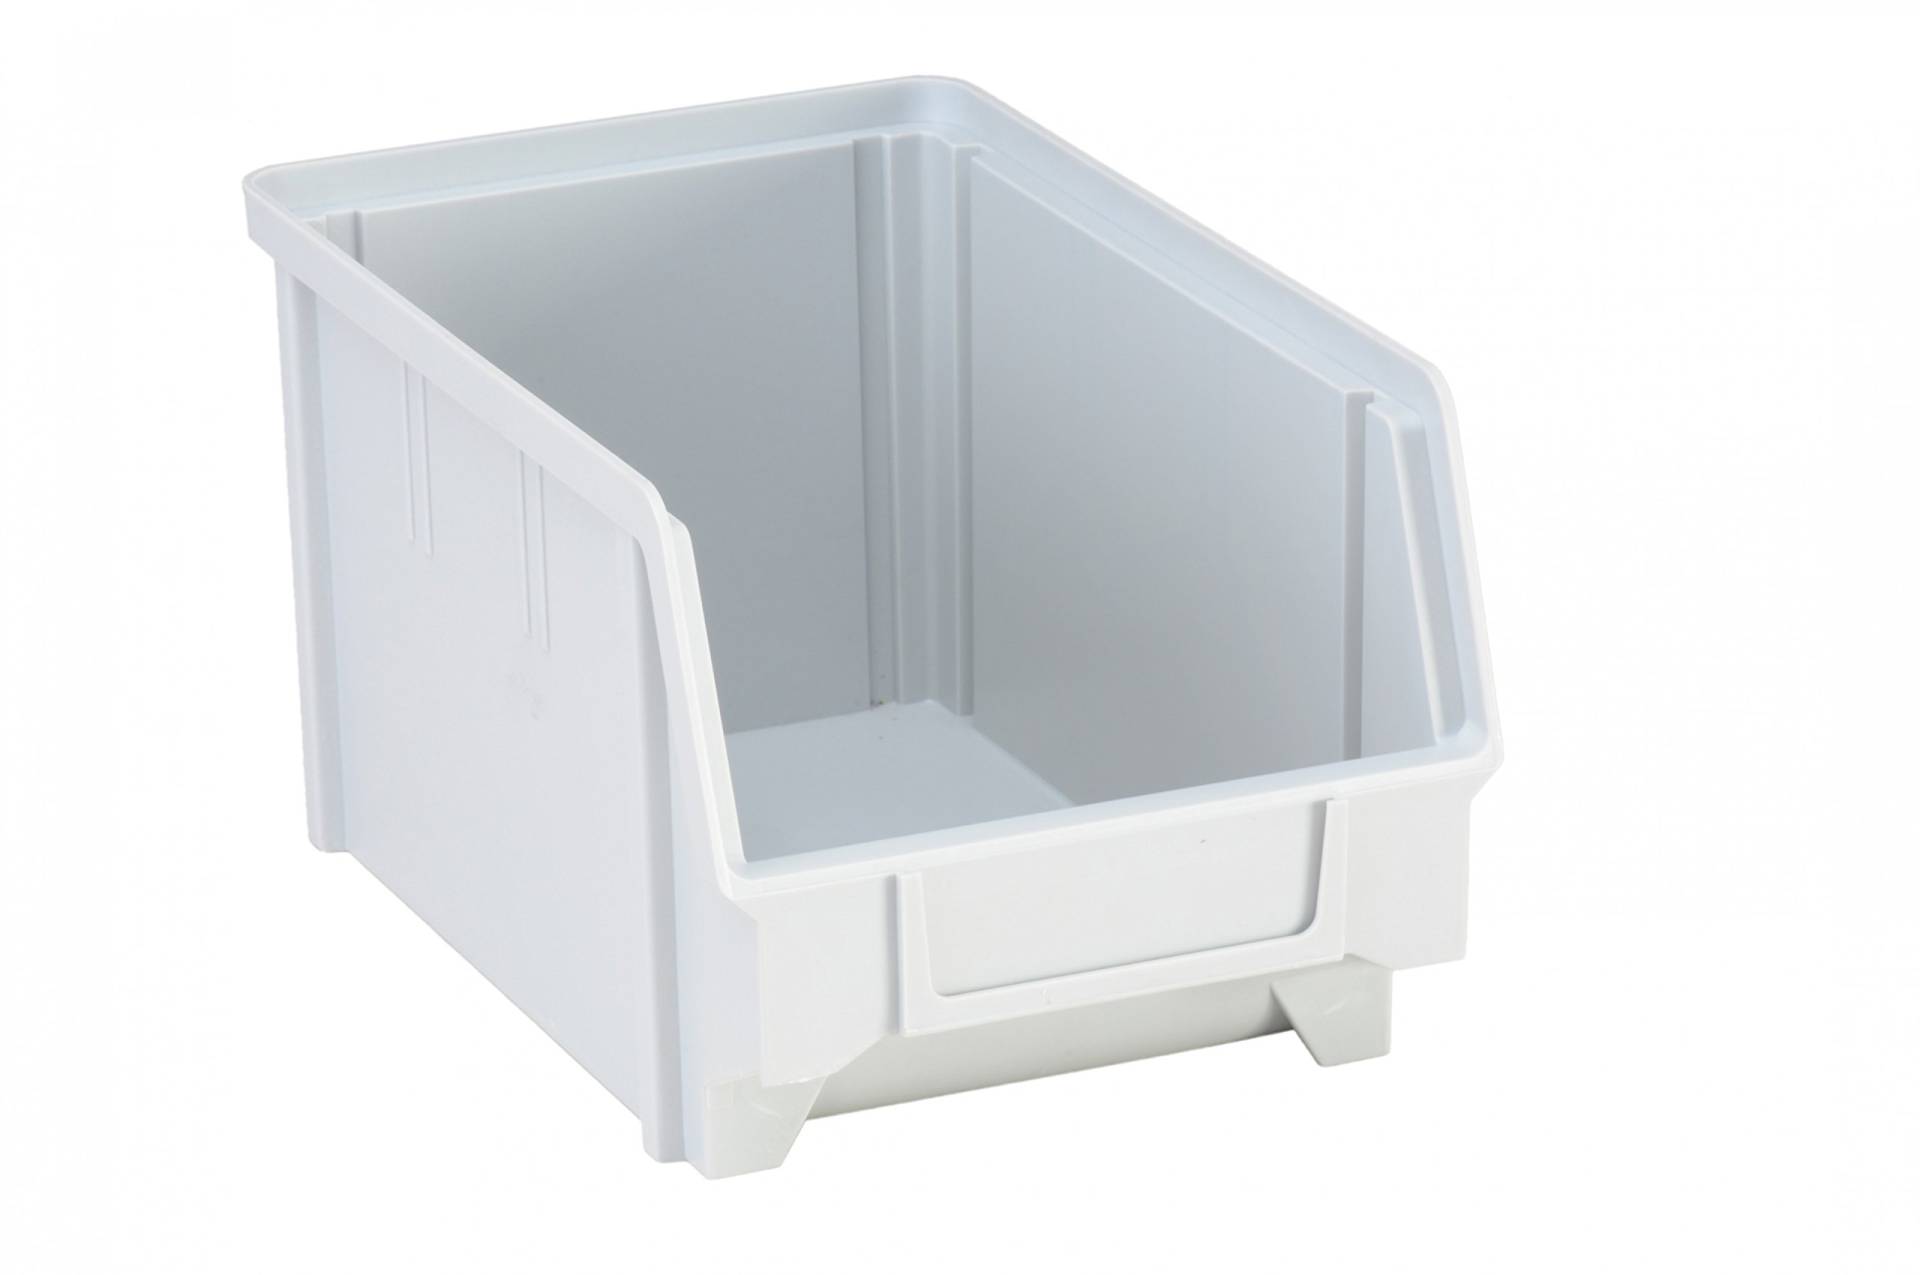 hünersdorff Sichtbox / Stapelbox / Lagerbox in Größe 3, aus Polystyrol, hohe Formstabilität und Belastbarkeit, Farbe: Grau von hünersdorff